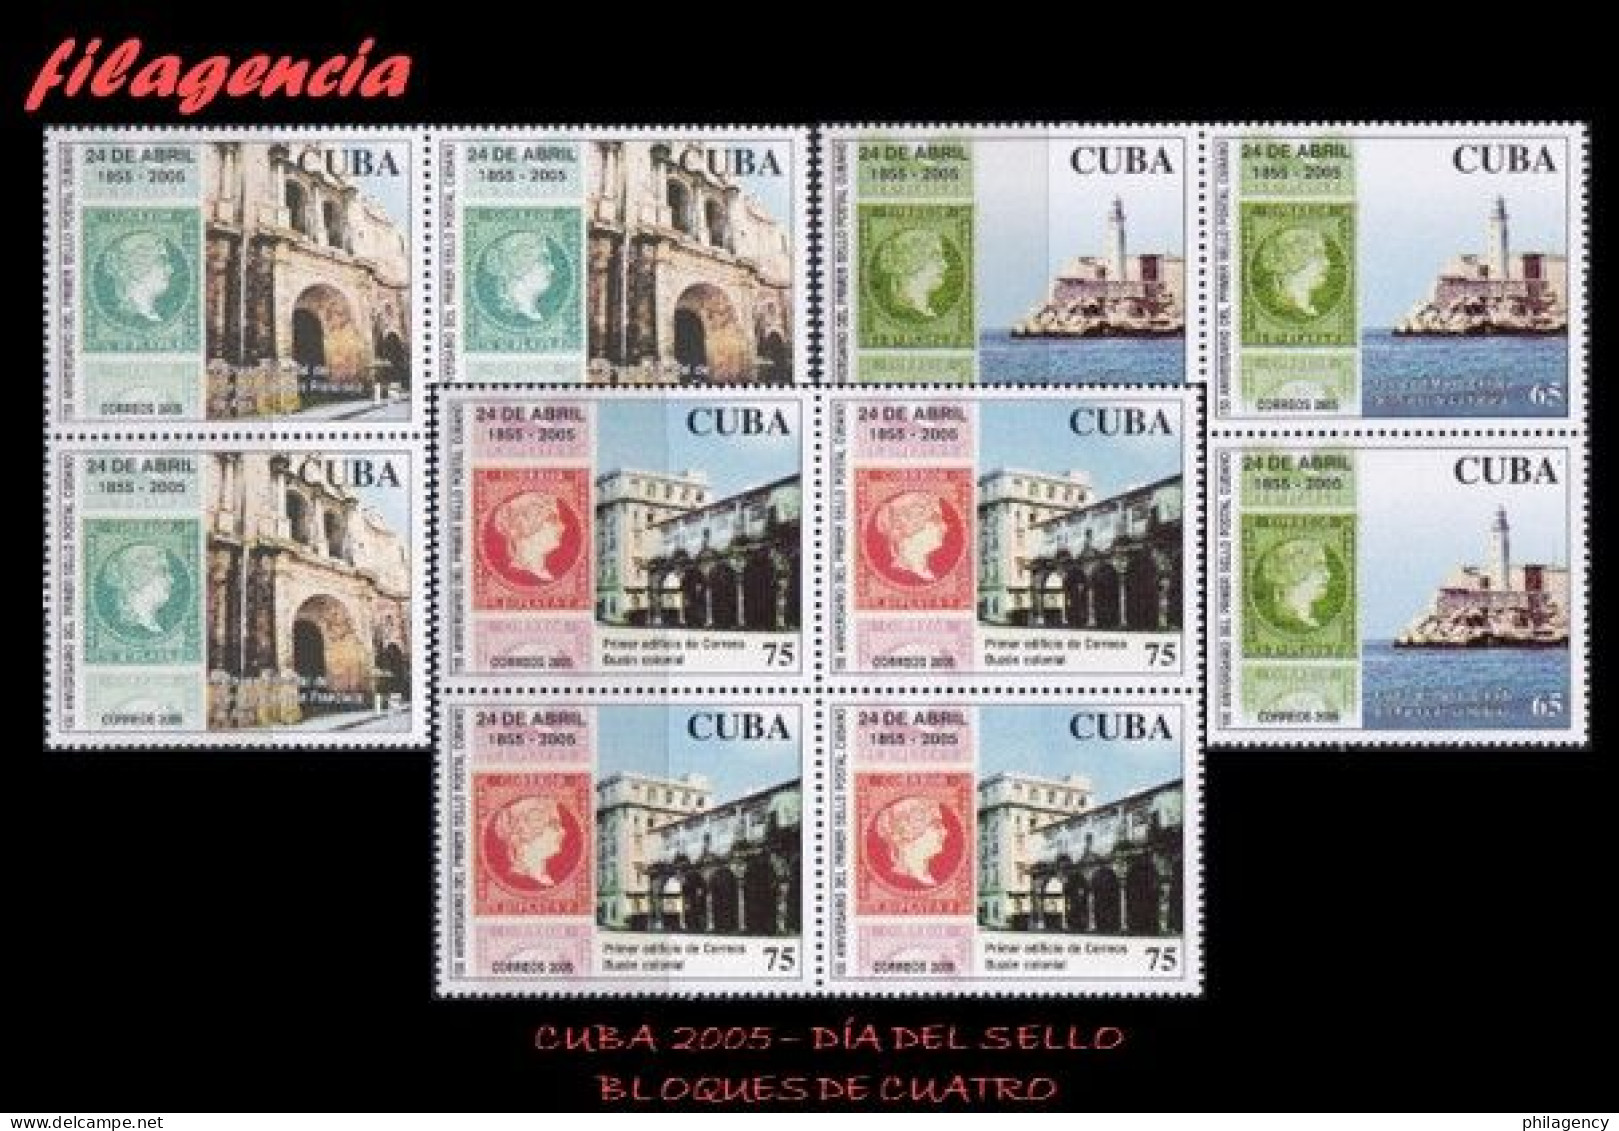 CUBA. BLOQUES DE CUATRO. 2005-14 DÍA DEL SELLO CUBANO. PRIMERA EMISIÓN DE SELLOS CIRCULADOS EN CUBA - Ungebraucht